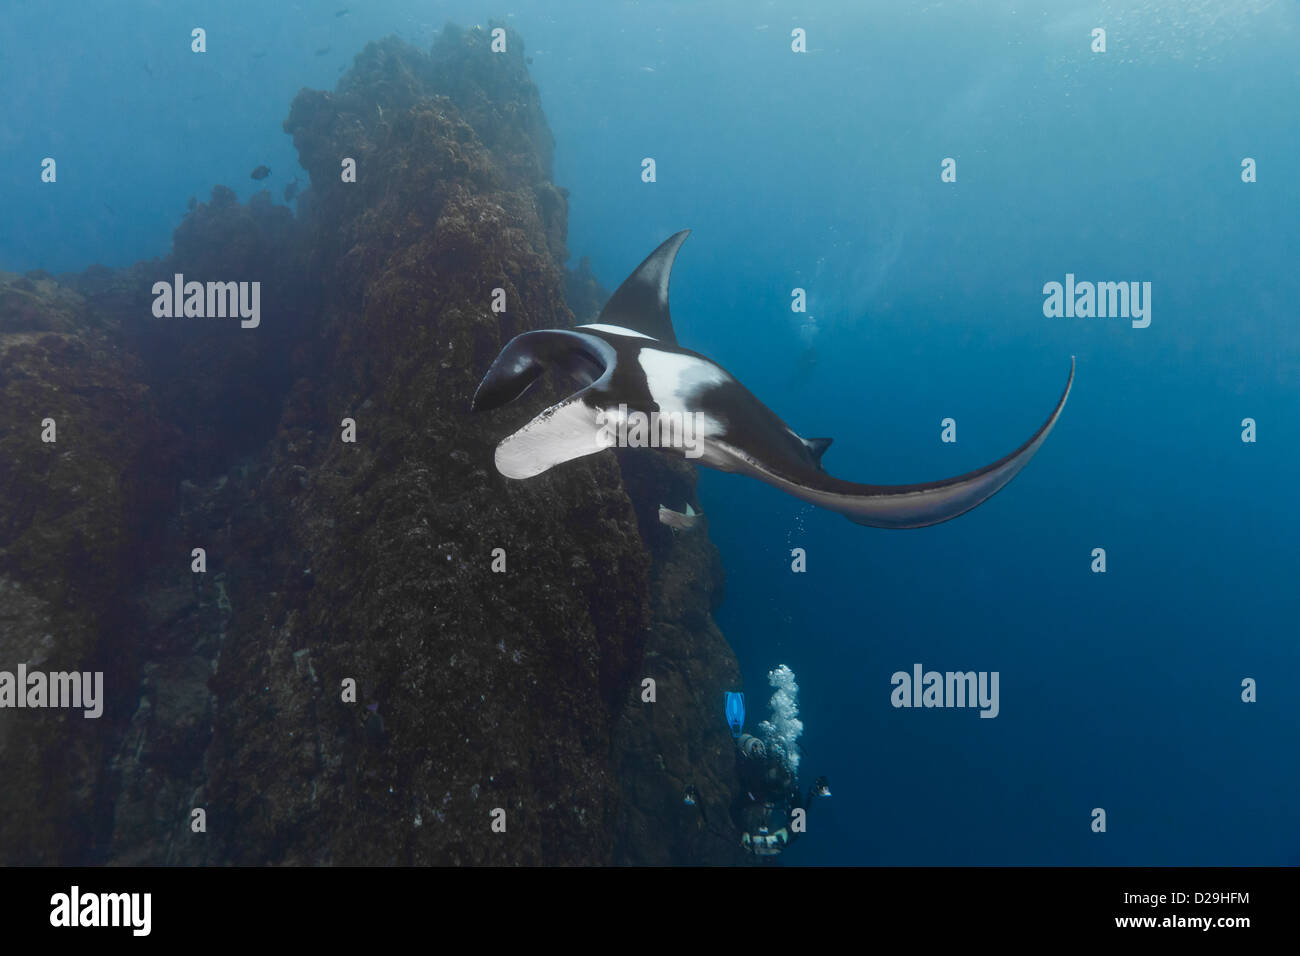 Giant oceanc manta ray nuoto al di sopra di un subacqueo in Archipielago de Revillagigedo, Messico Rocio del Mar, Socorro Isole. Foto Stock